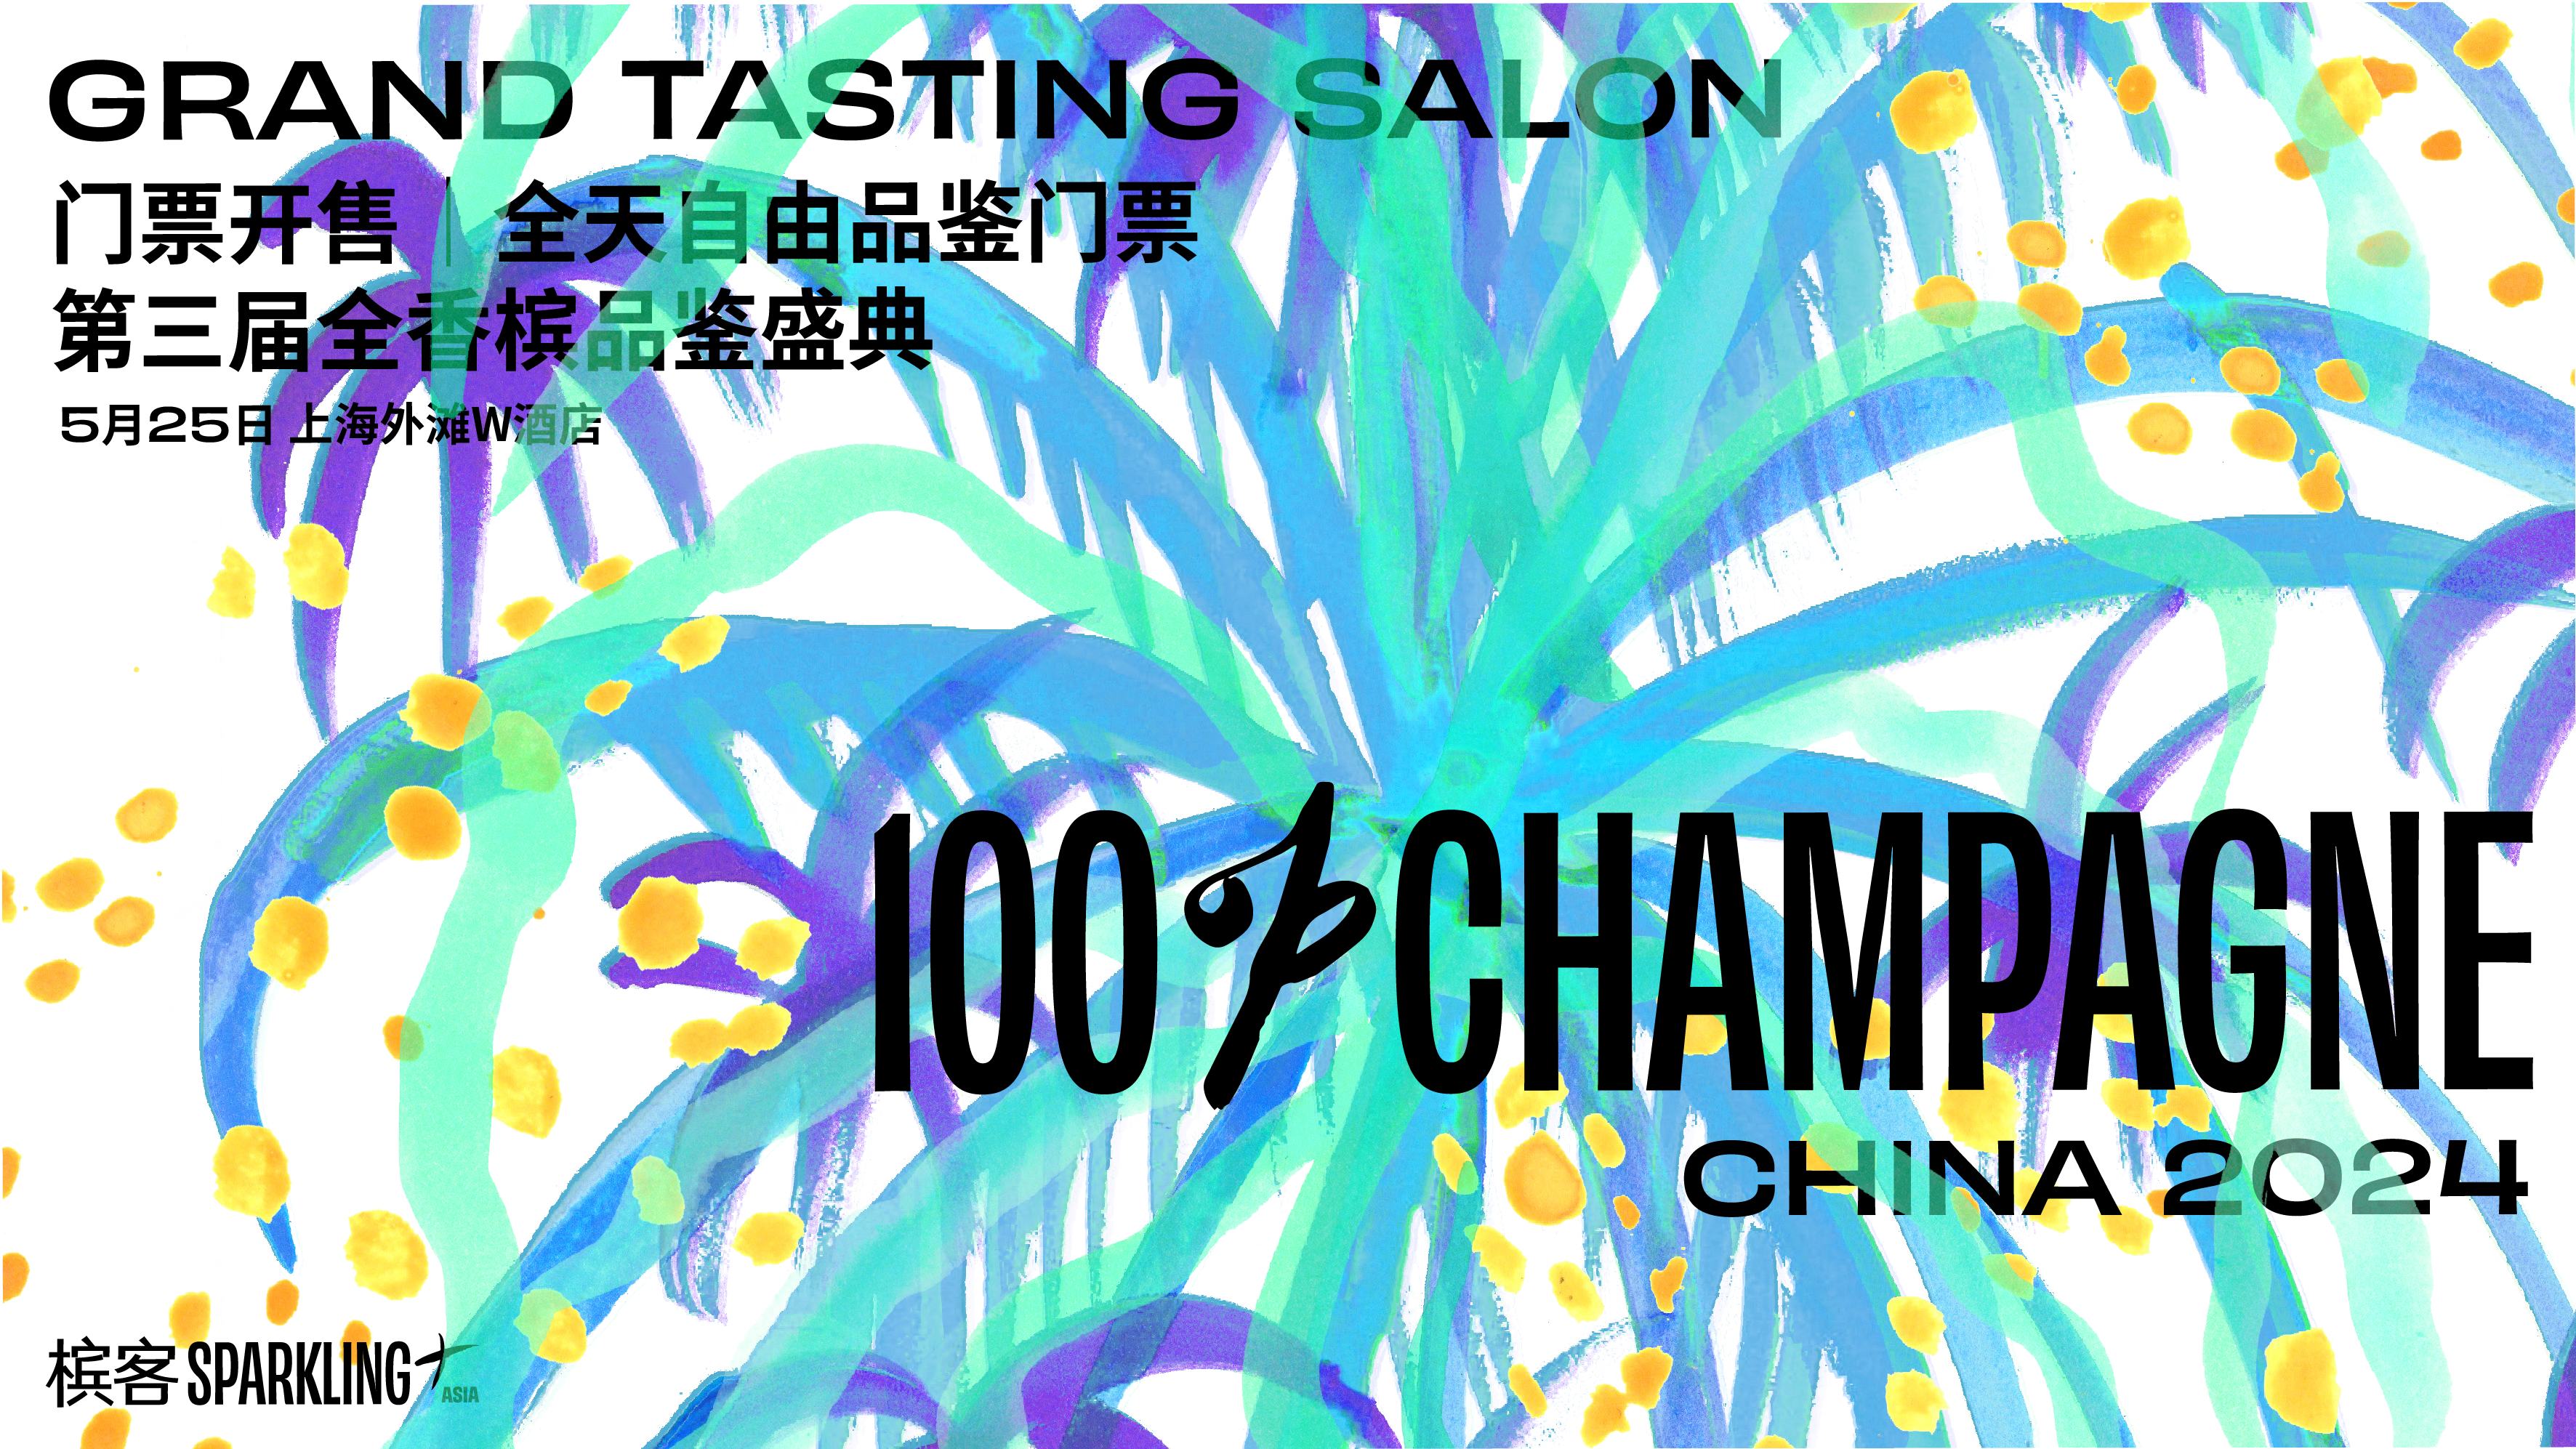 5 月 25 日上海 100% CHAMPAGNE Asia 2024【全香槟自由品鉴会】门票